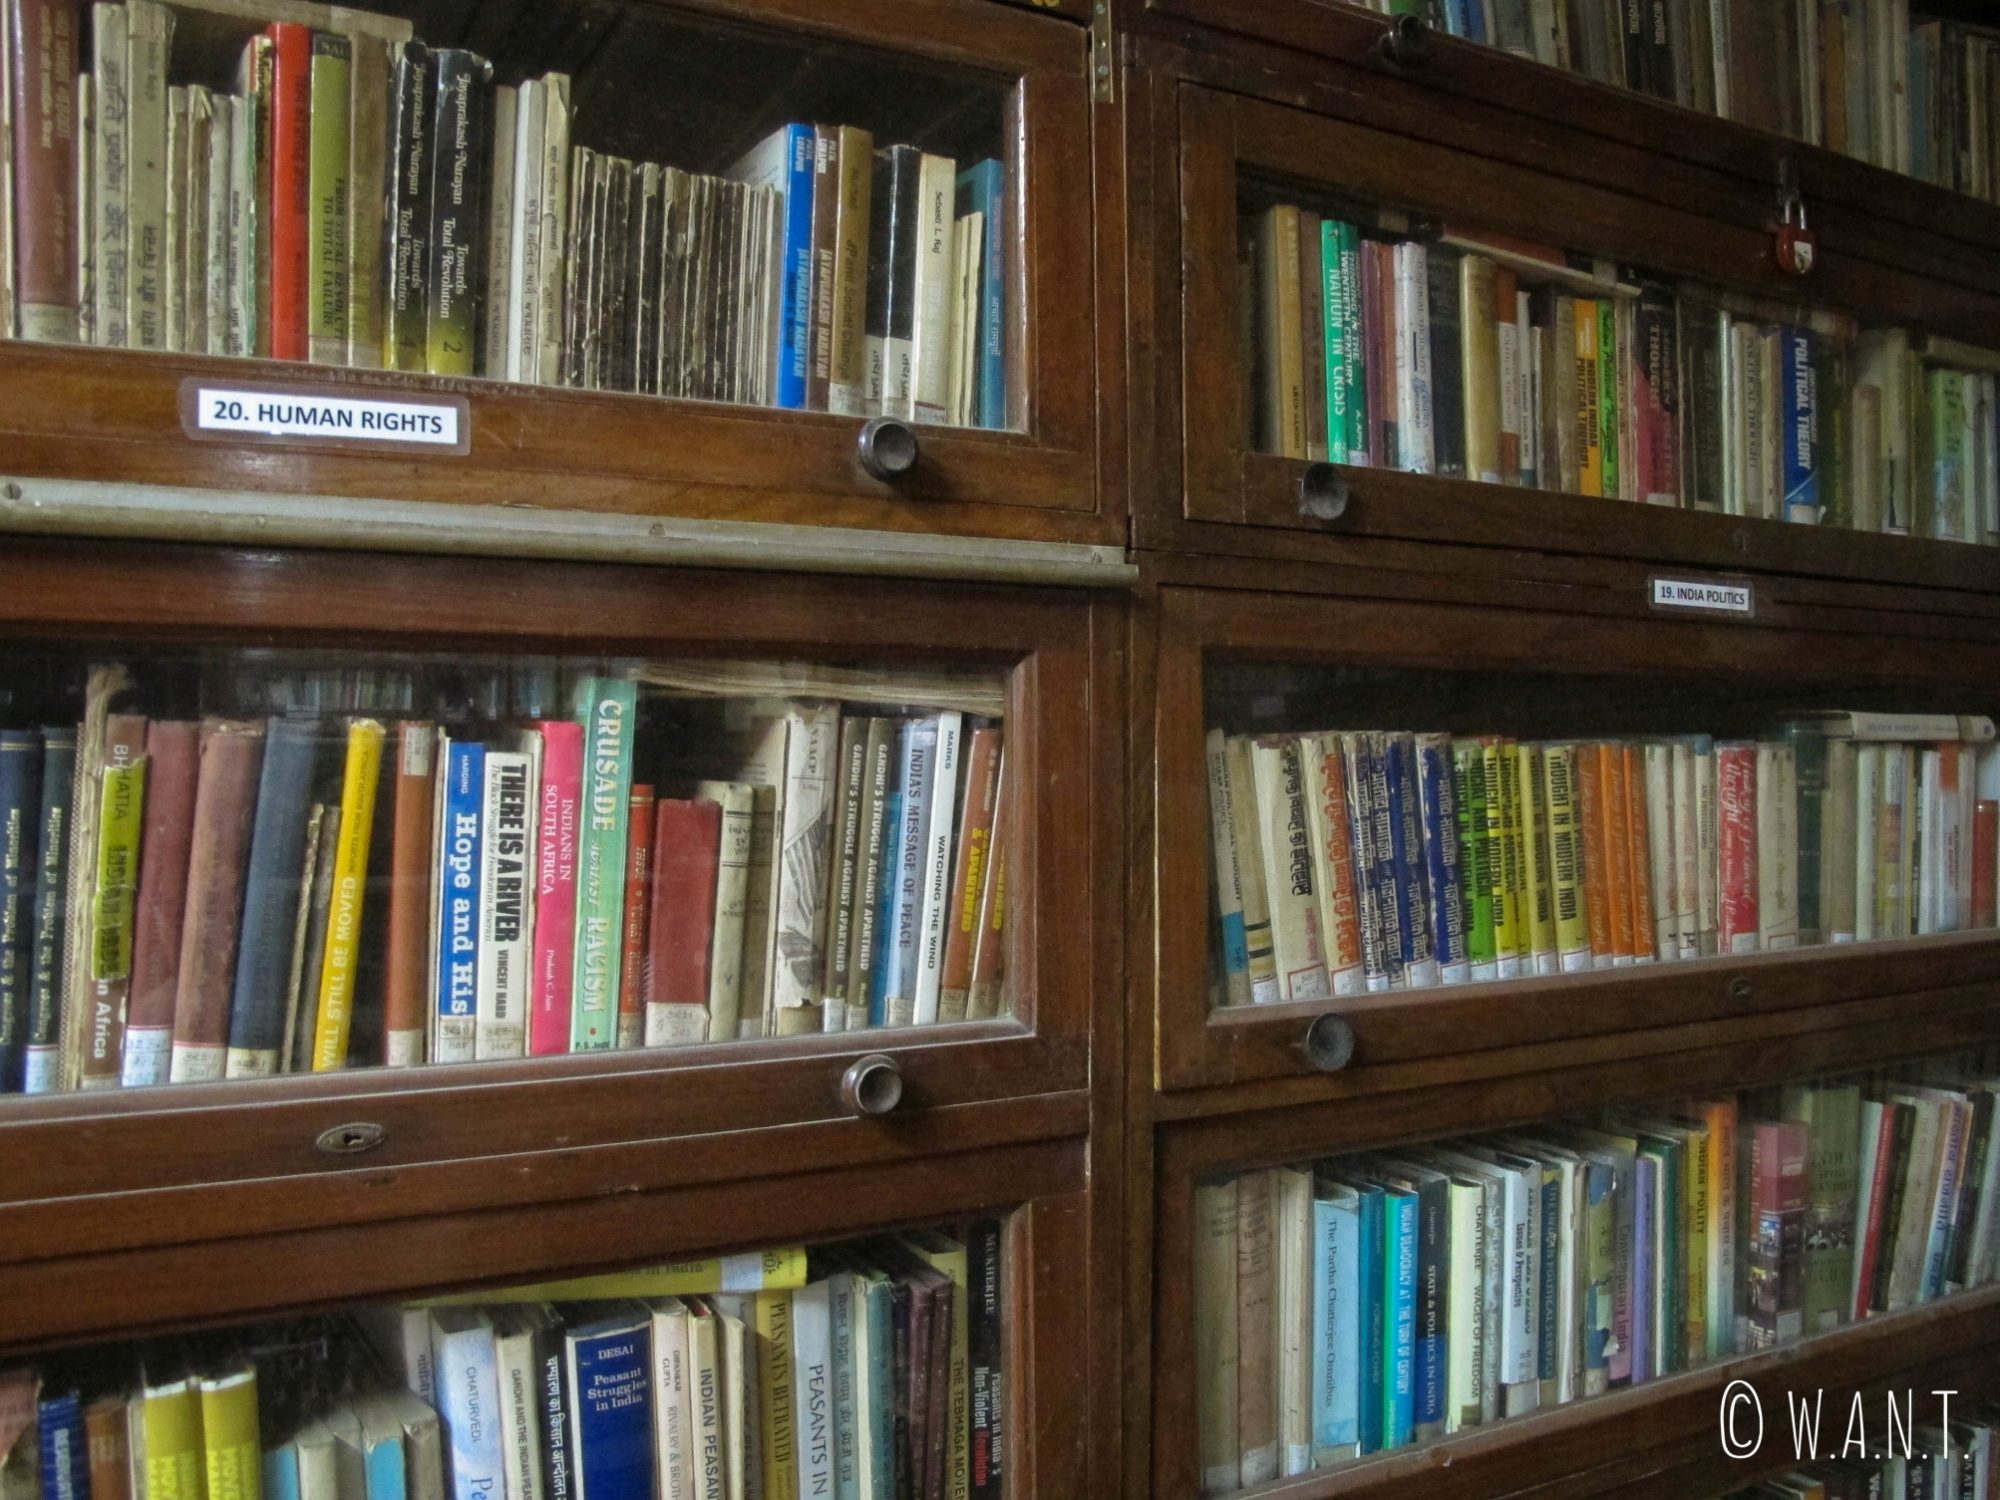 La bibliothèque de la maison de Gandhi comporte un ensemble d'ouvrages impressionnant